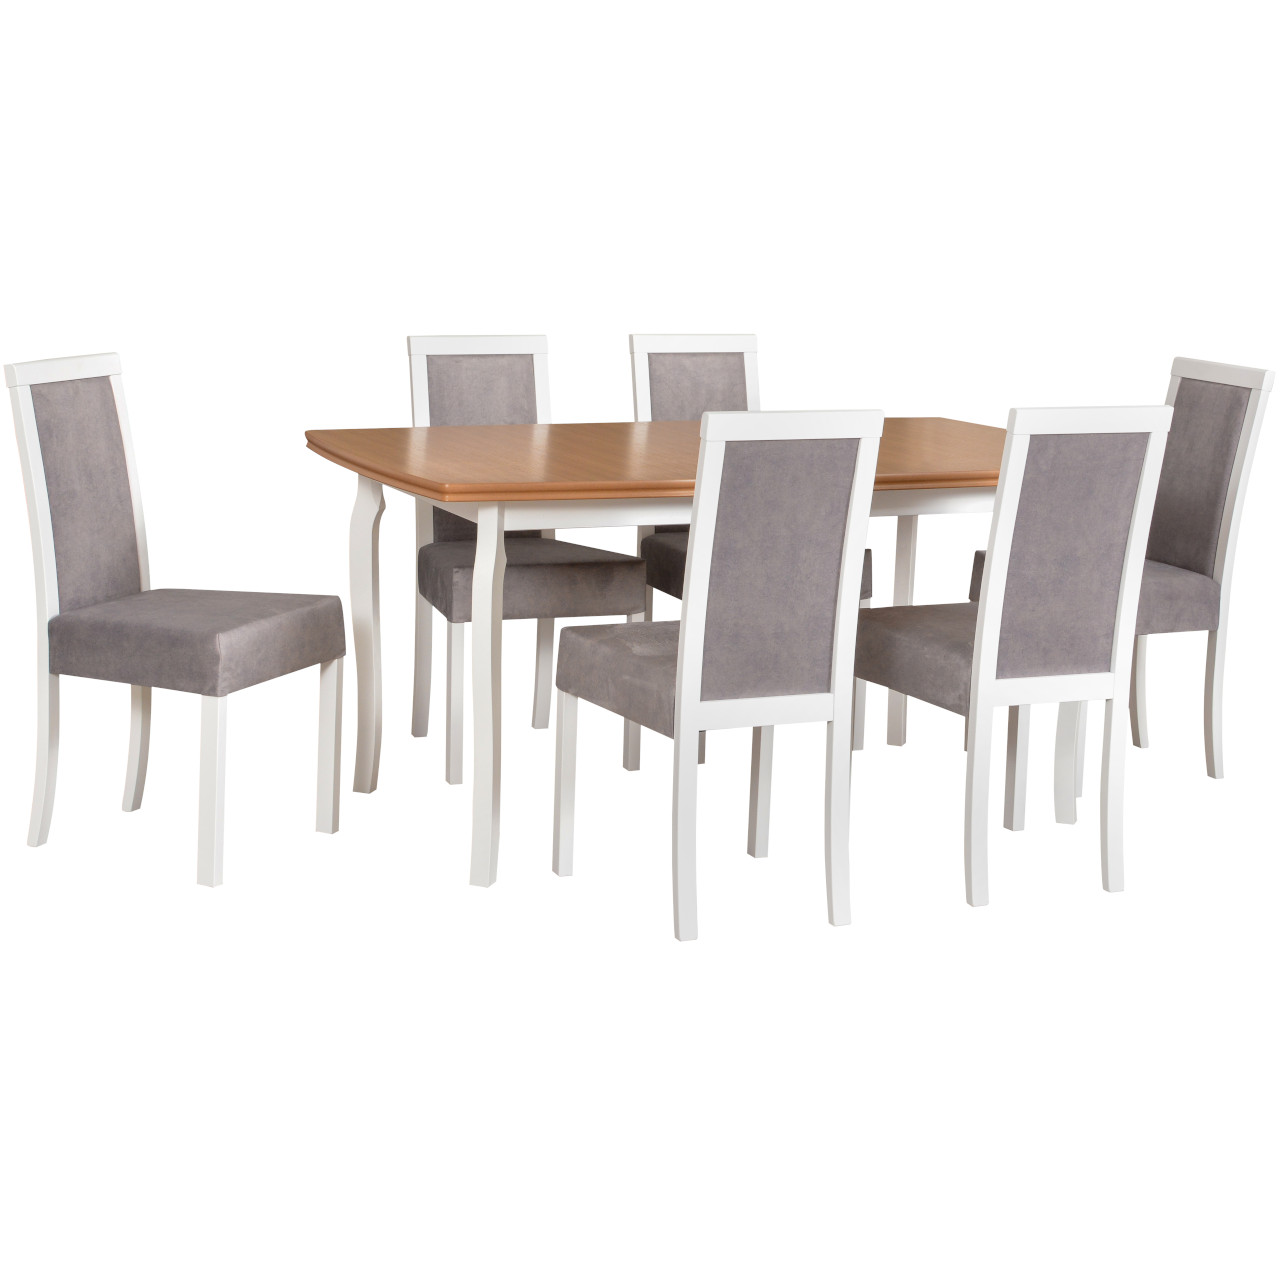 Tisch KENT 1 Eichenfurnier / weiß + Stühle ROMA 3 (6Stk.) weiß / 20B